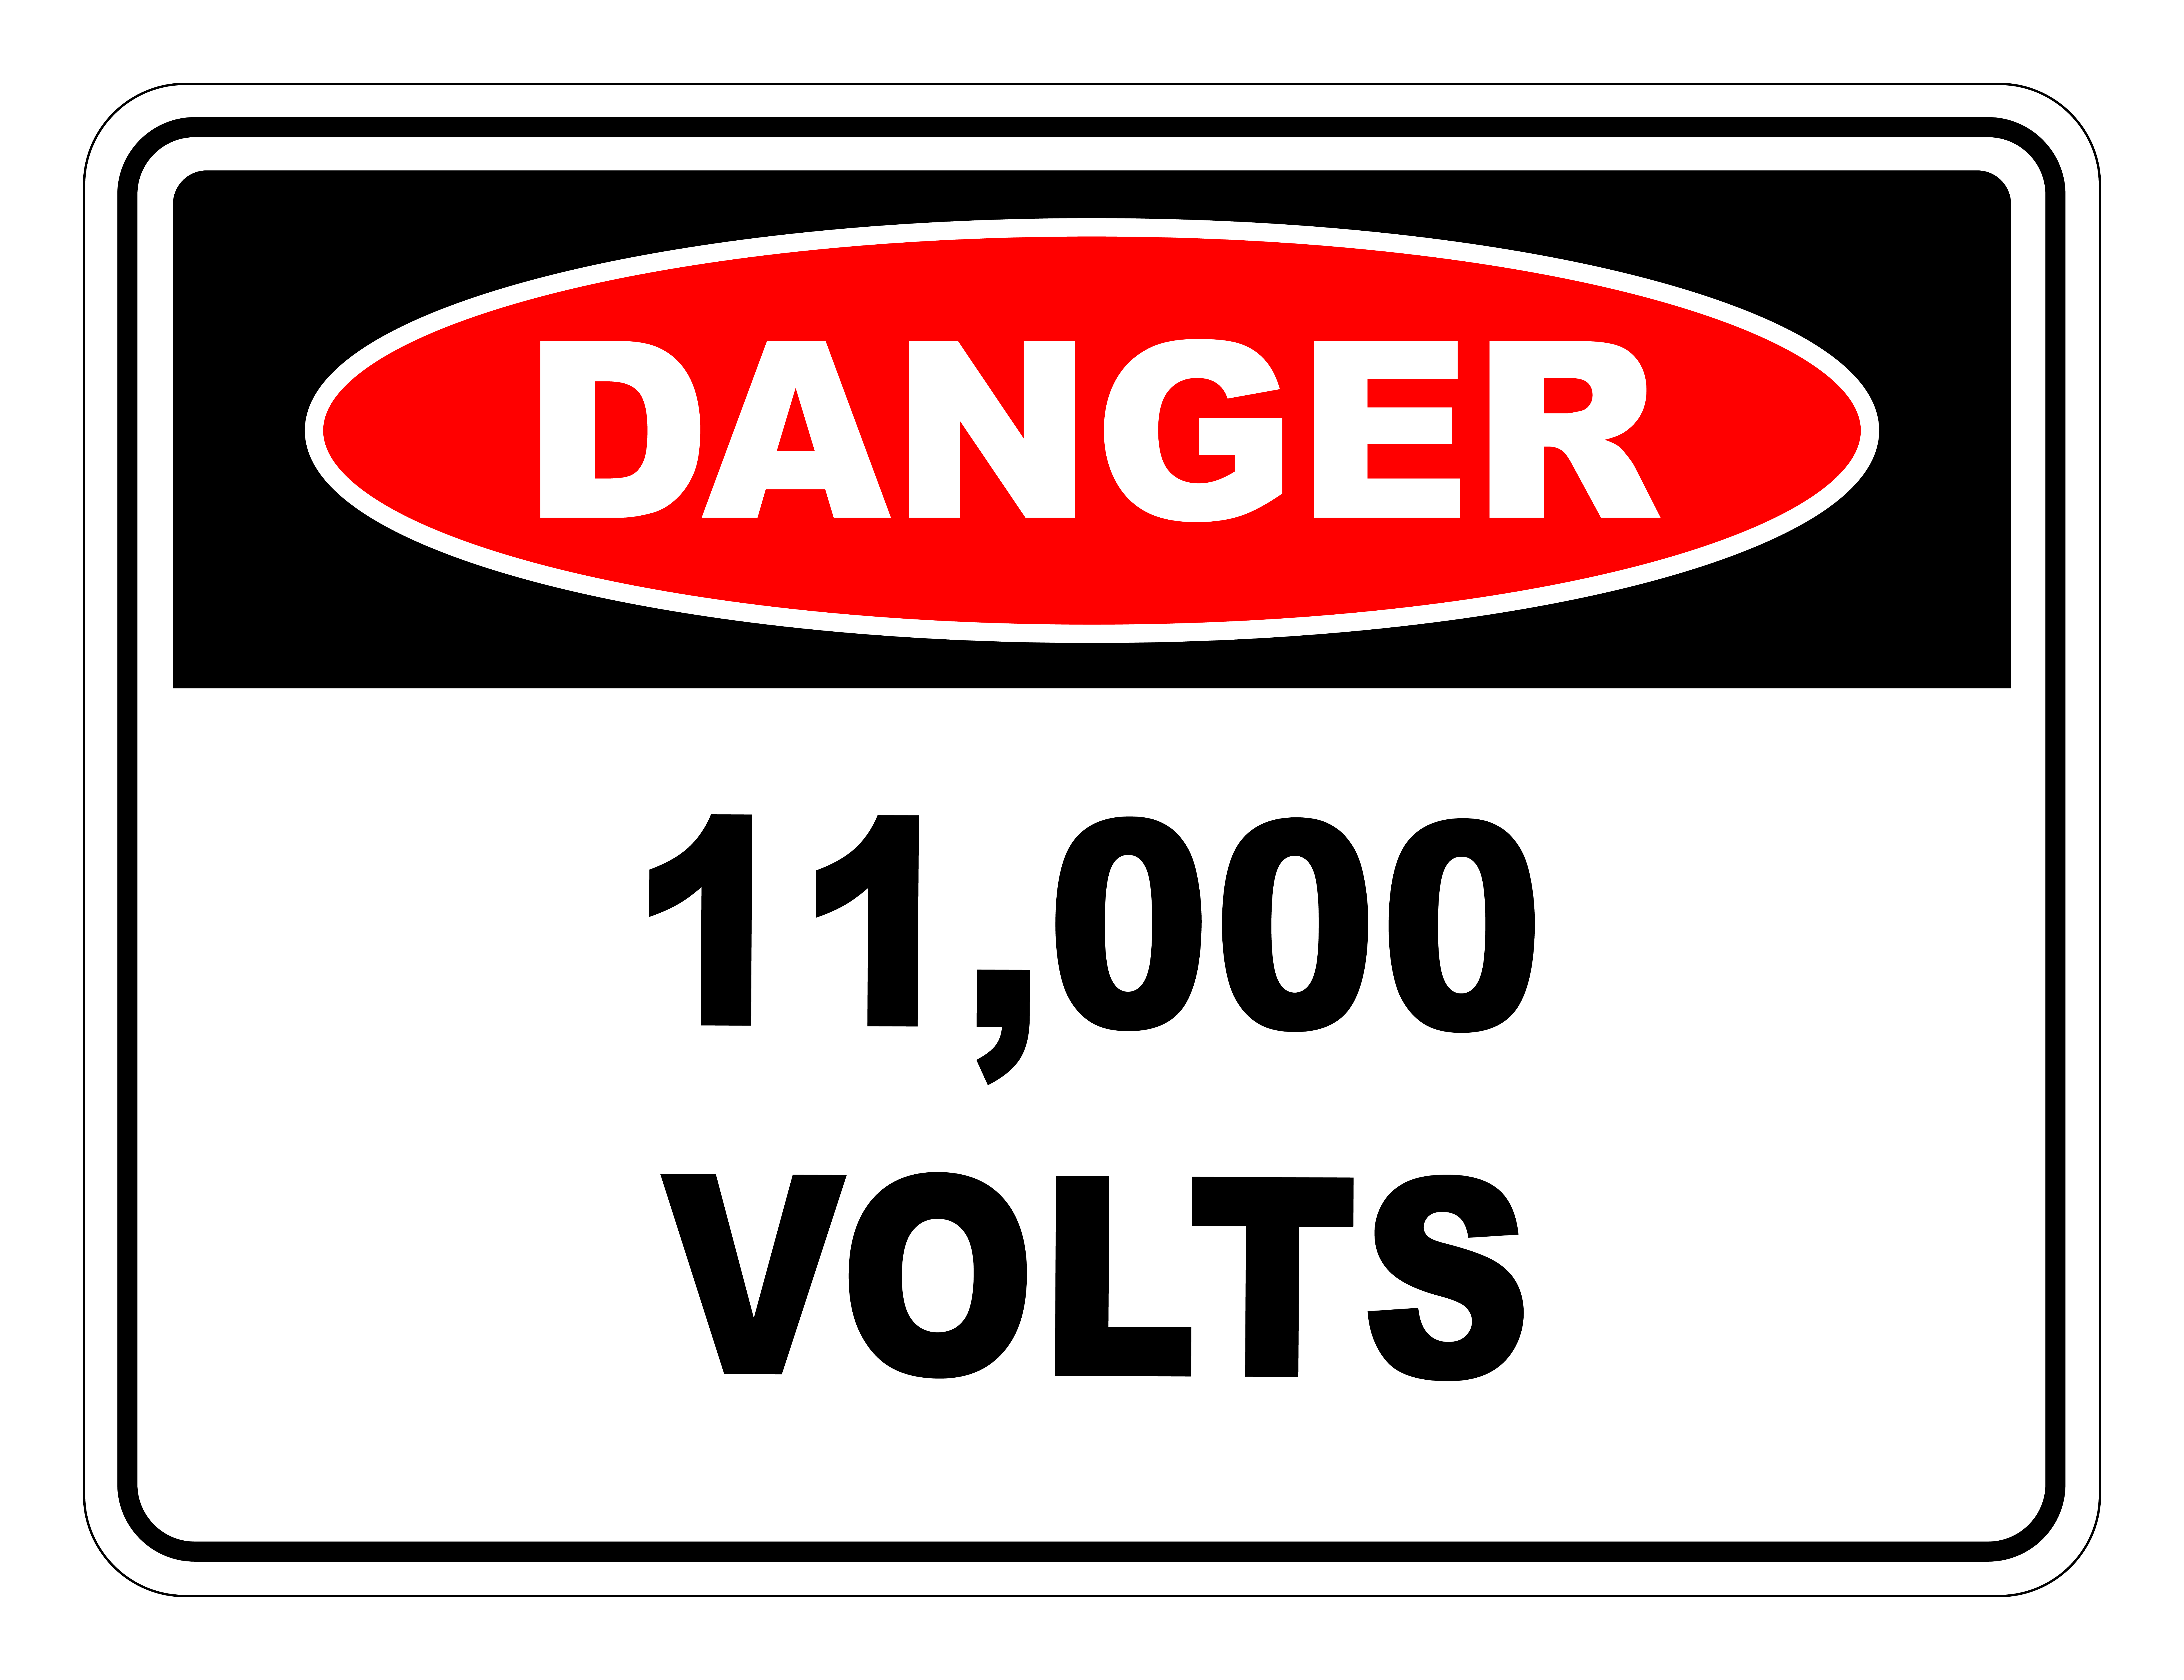 Danger 11000 Volts Safety Sign